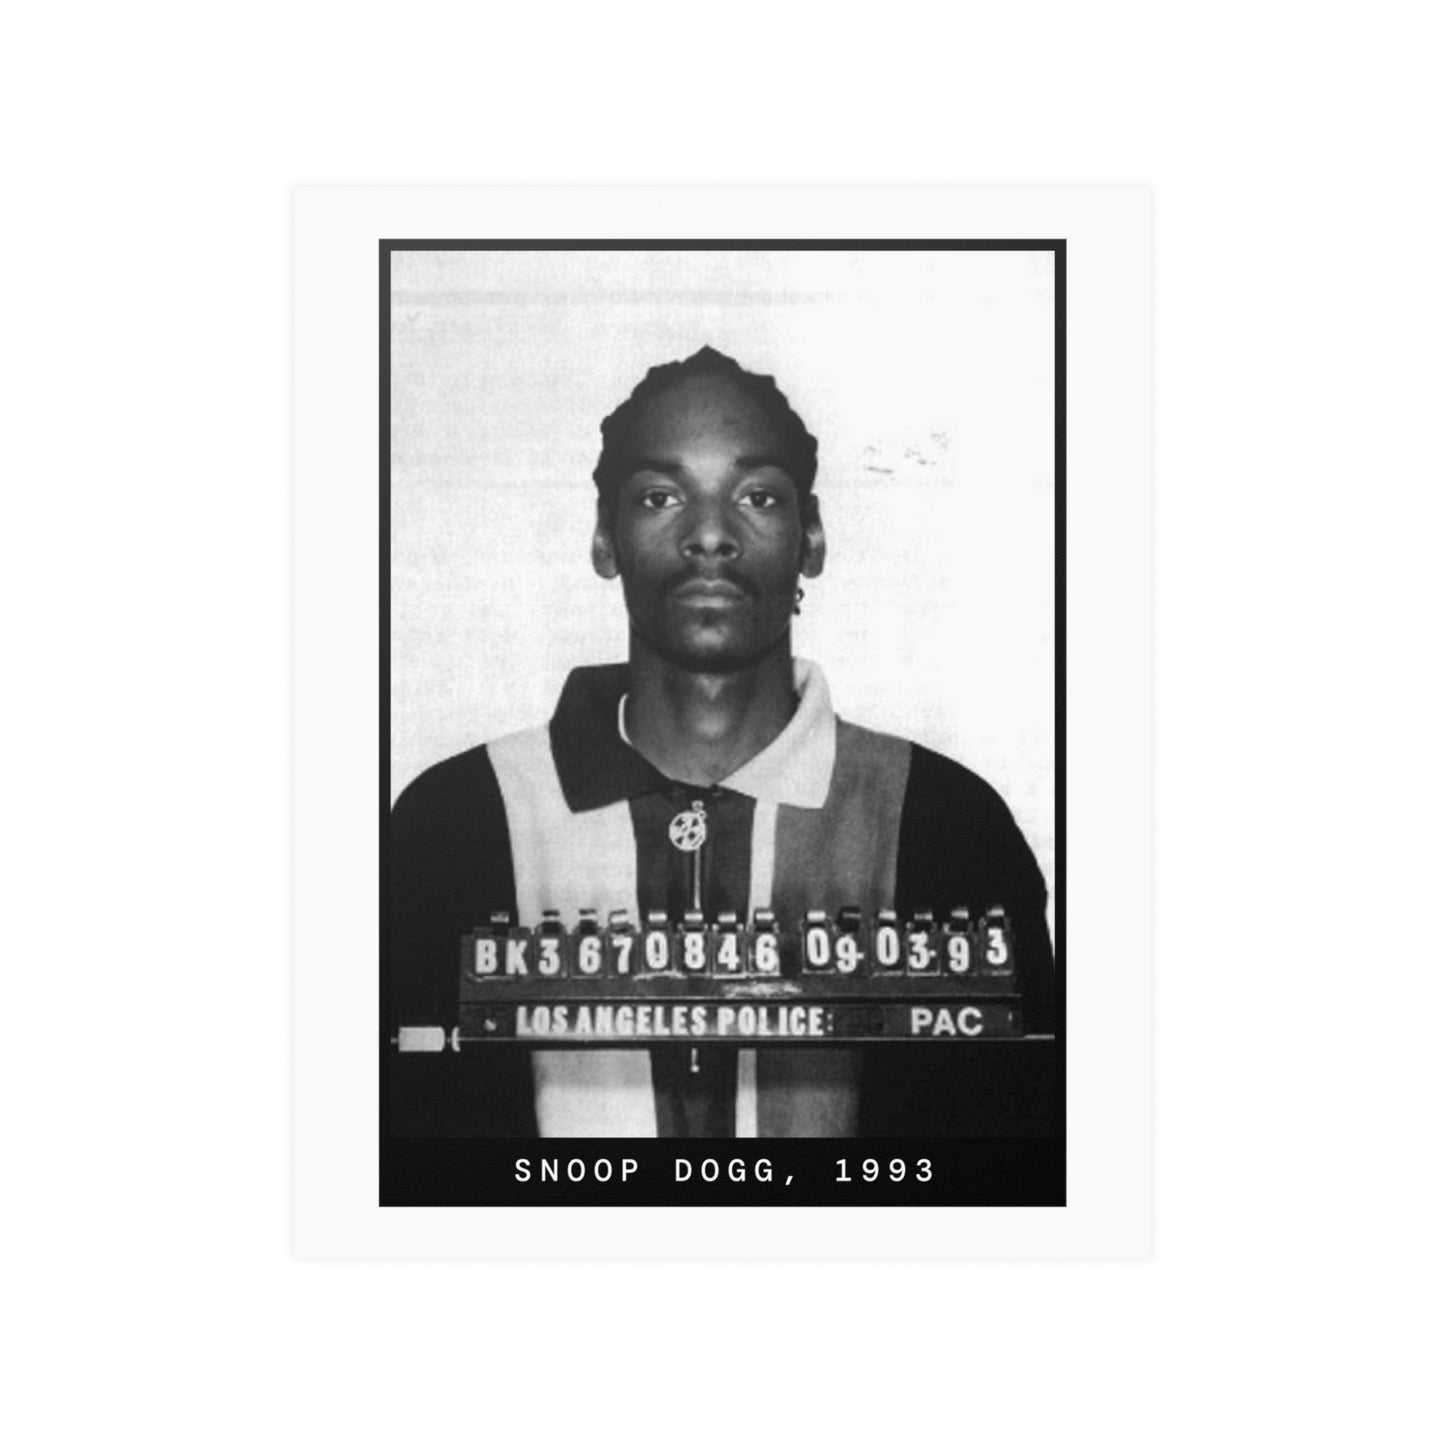 Snoop Dogg, 1993 Rapper Mugshot Poster